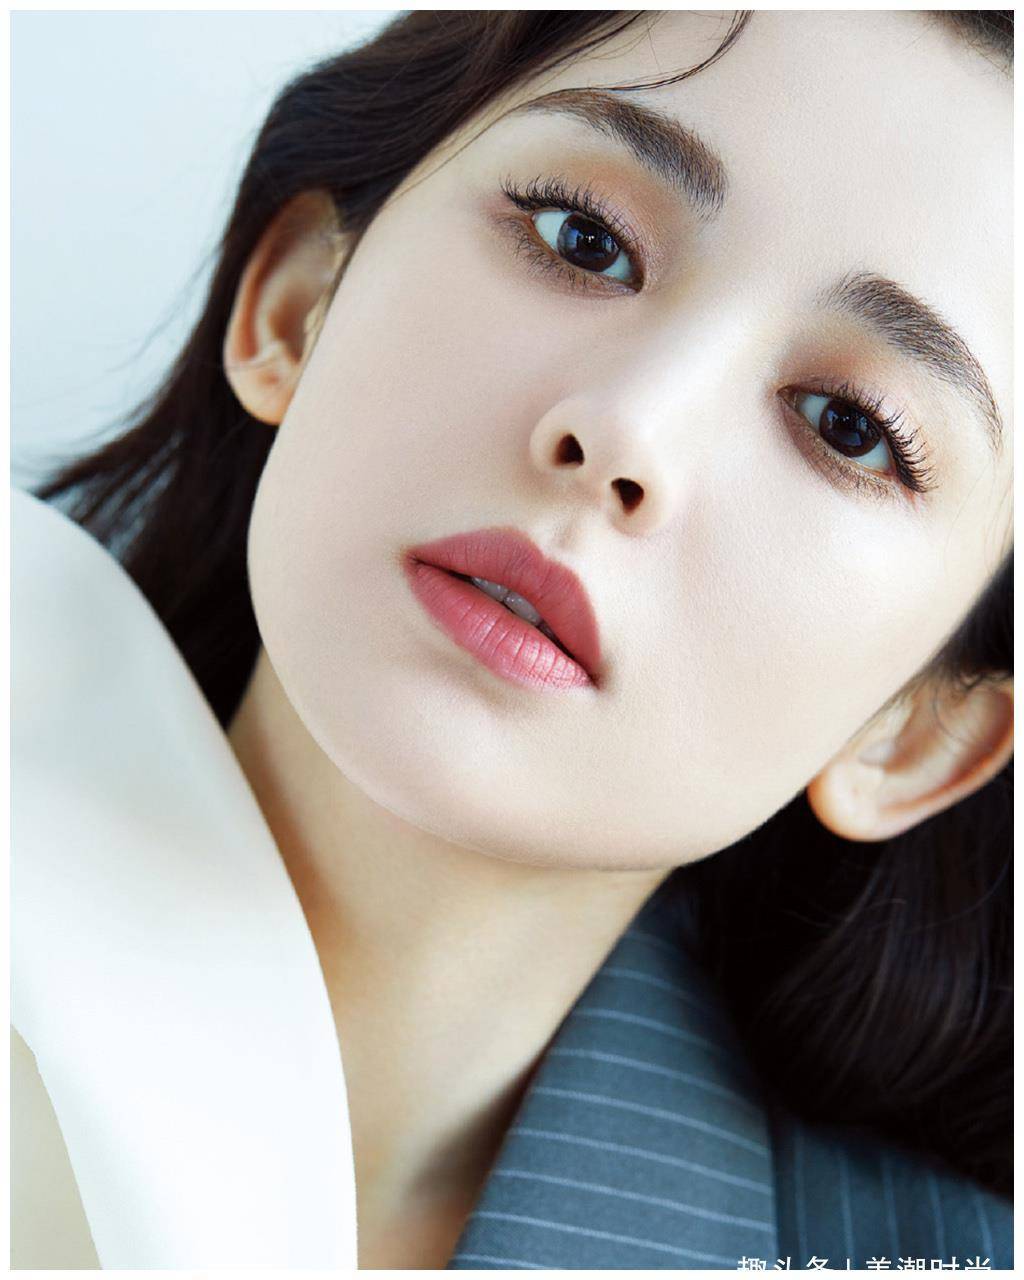 古力娜扎登韩版时尚大刊封面,五官美艳迷人,比韩版脸庞优越太多